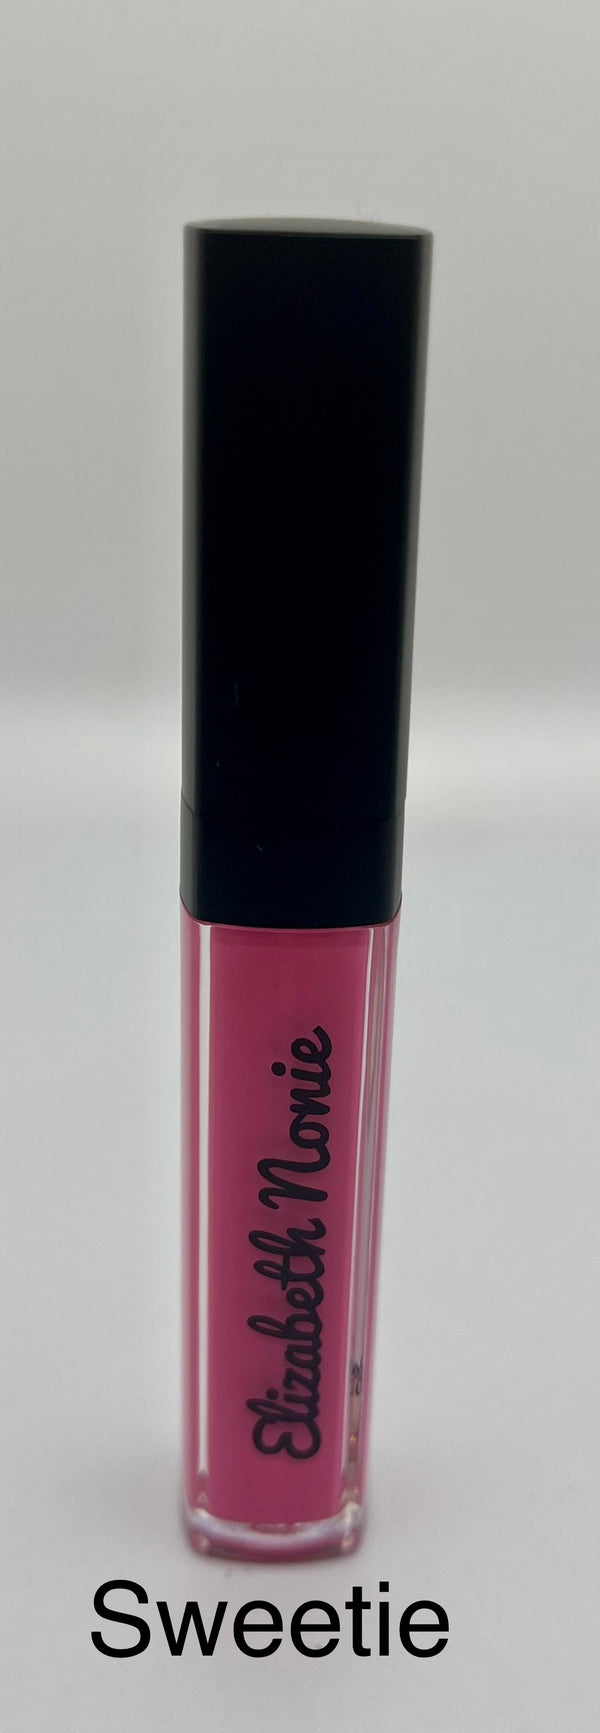 Sweetie Matte Liquid Lipstick